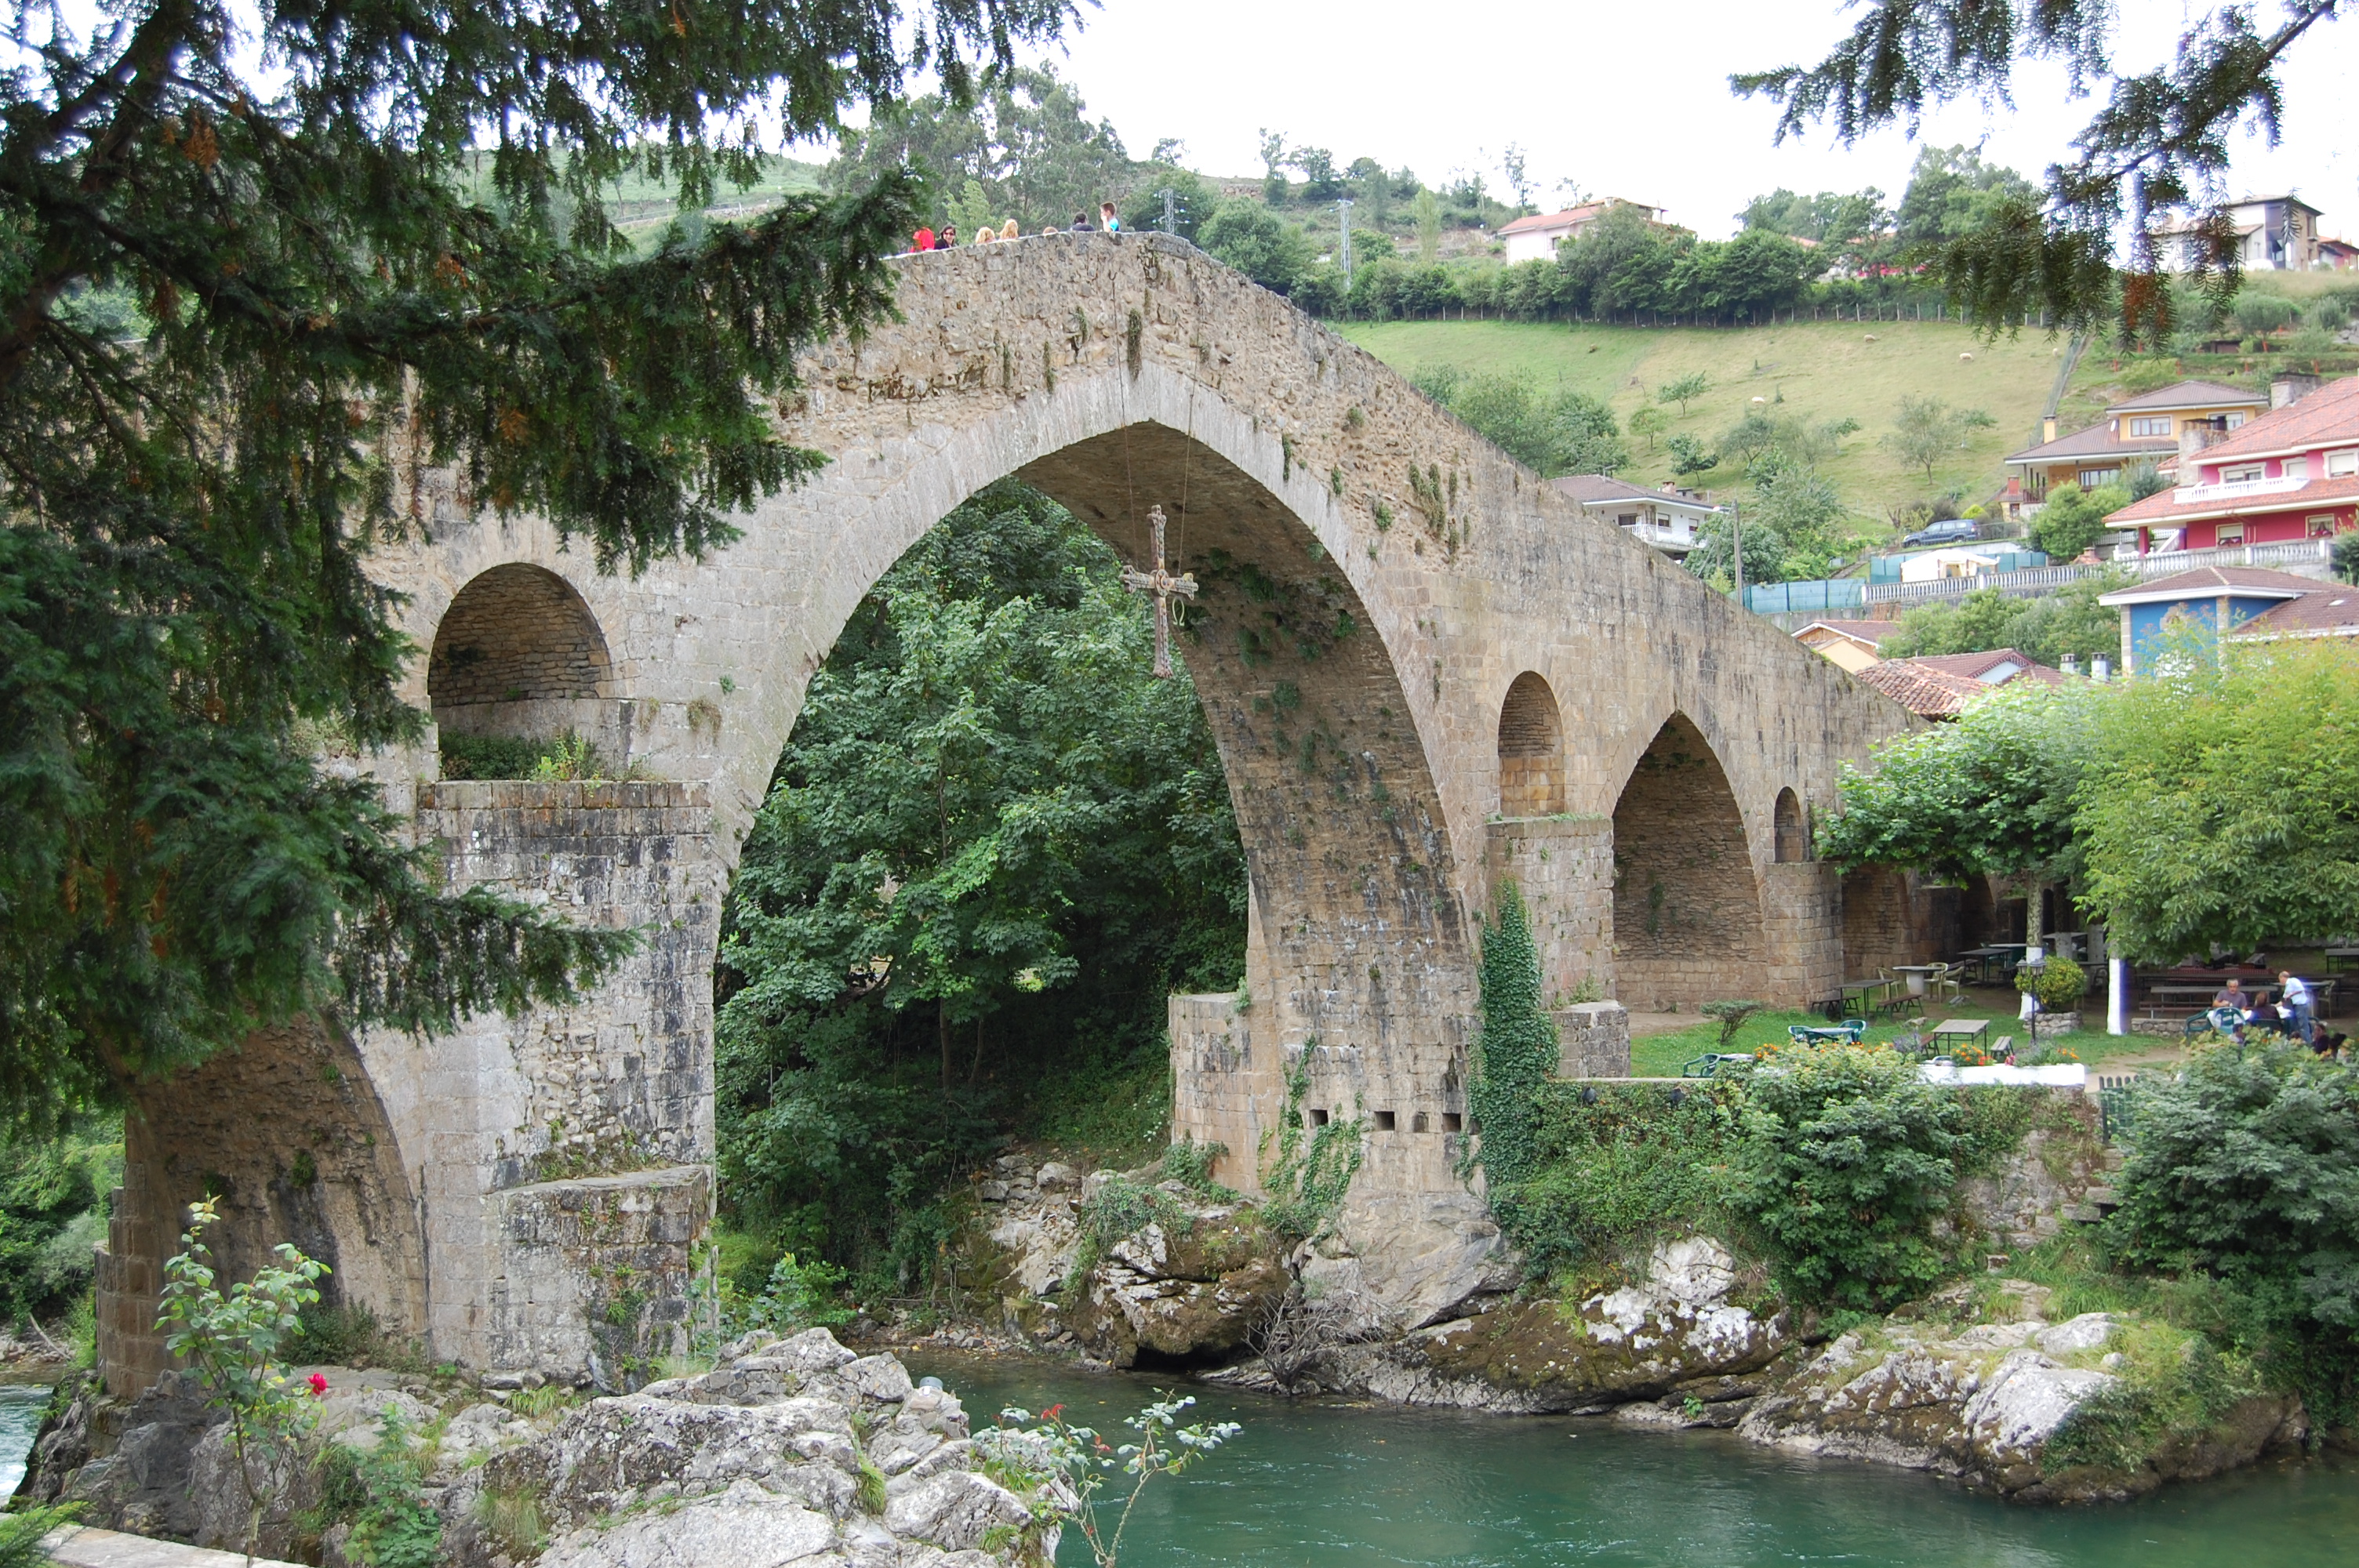 Foto del puente de piedra de Cangas de Onís con sus arcos de apoyo.